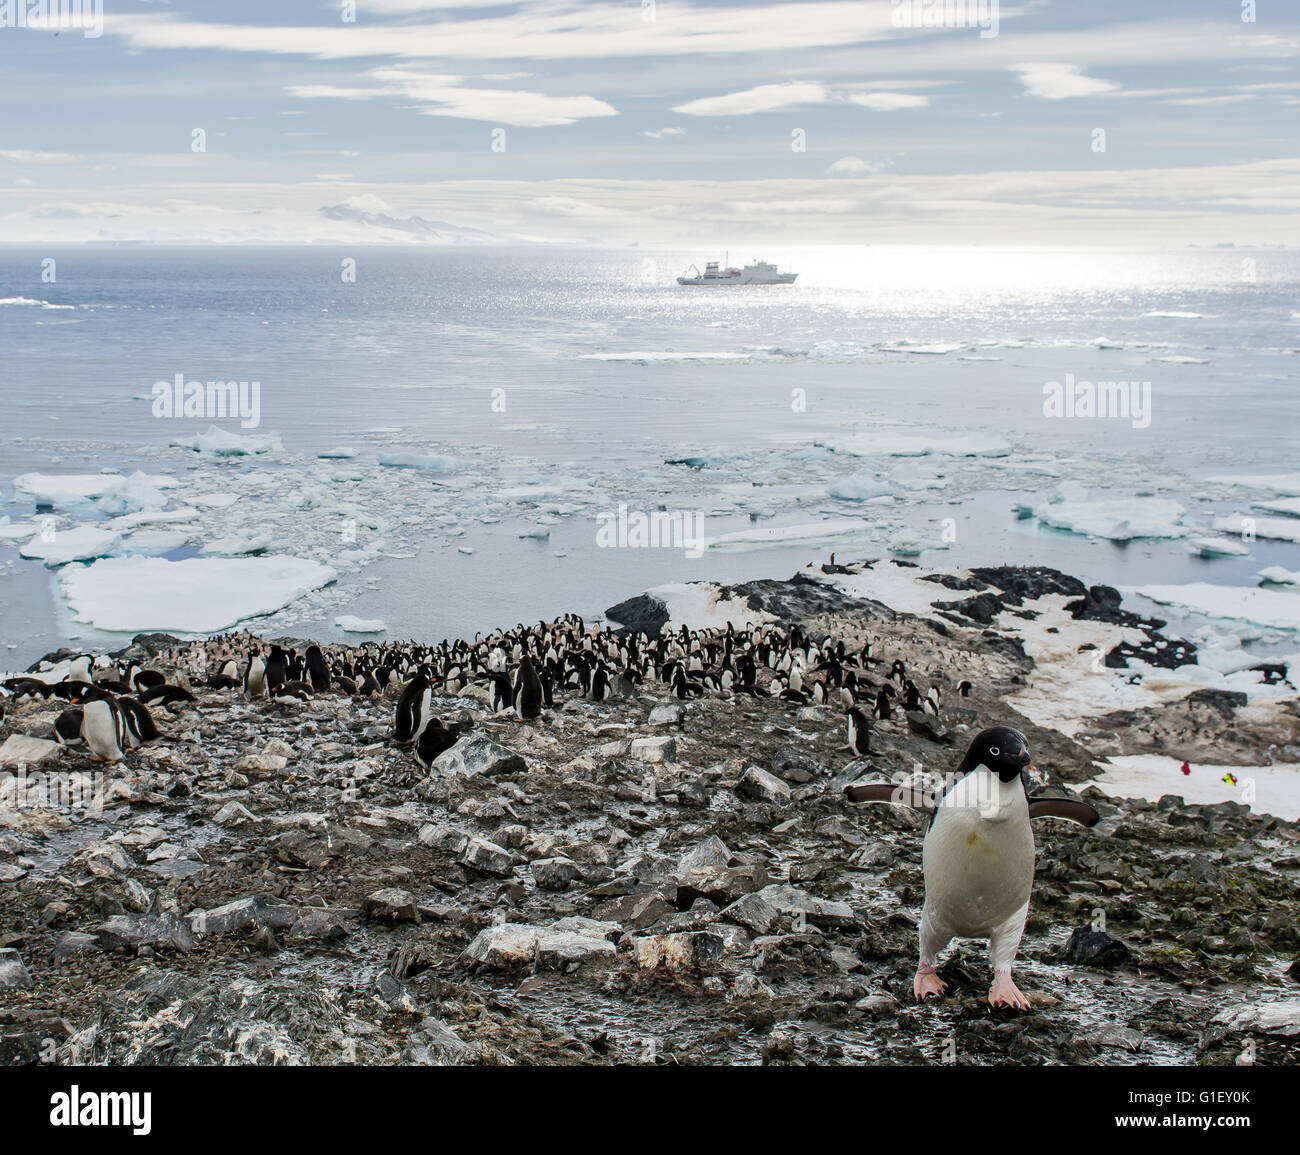 AdŽlie colonia de pingüinos papúa (Pygoscelis adeliae) Acantilados de granza en la Península Antártica La Antártida Foto de stock